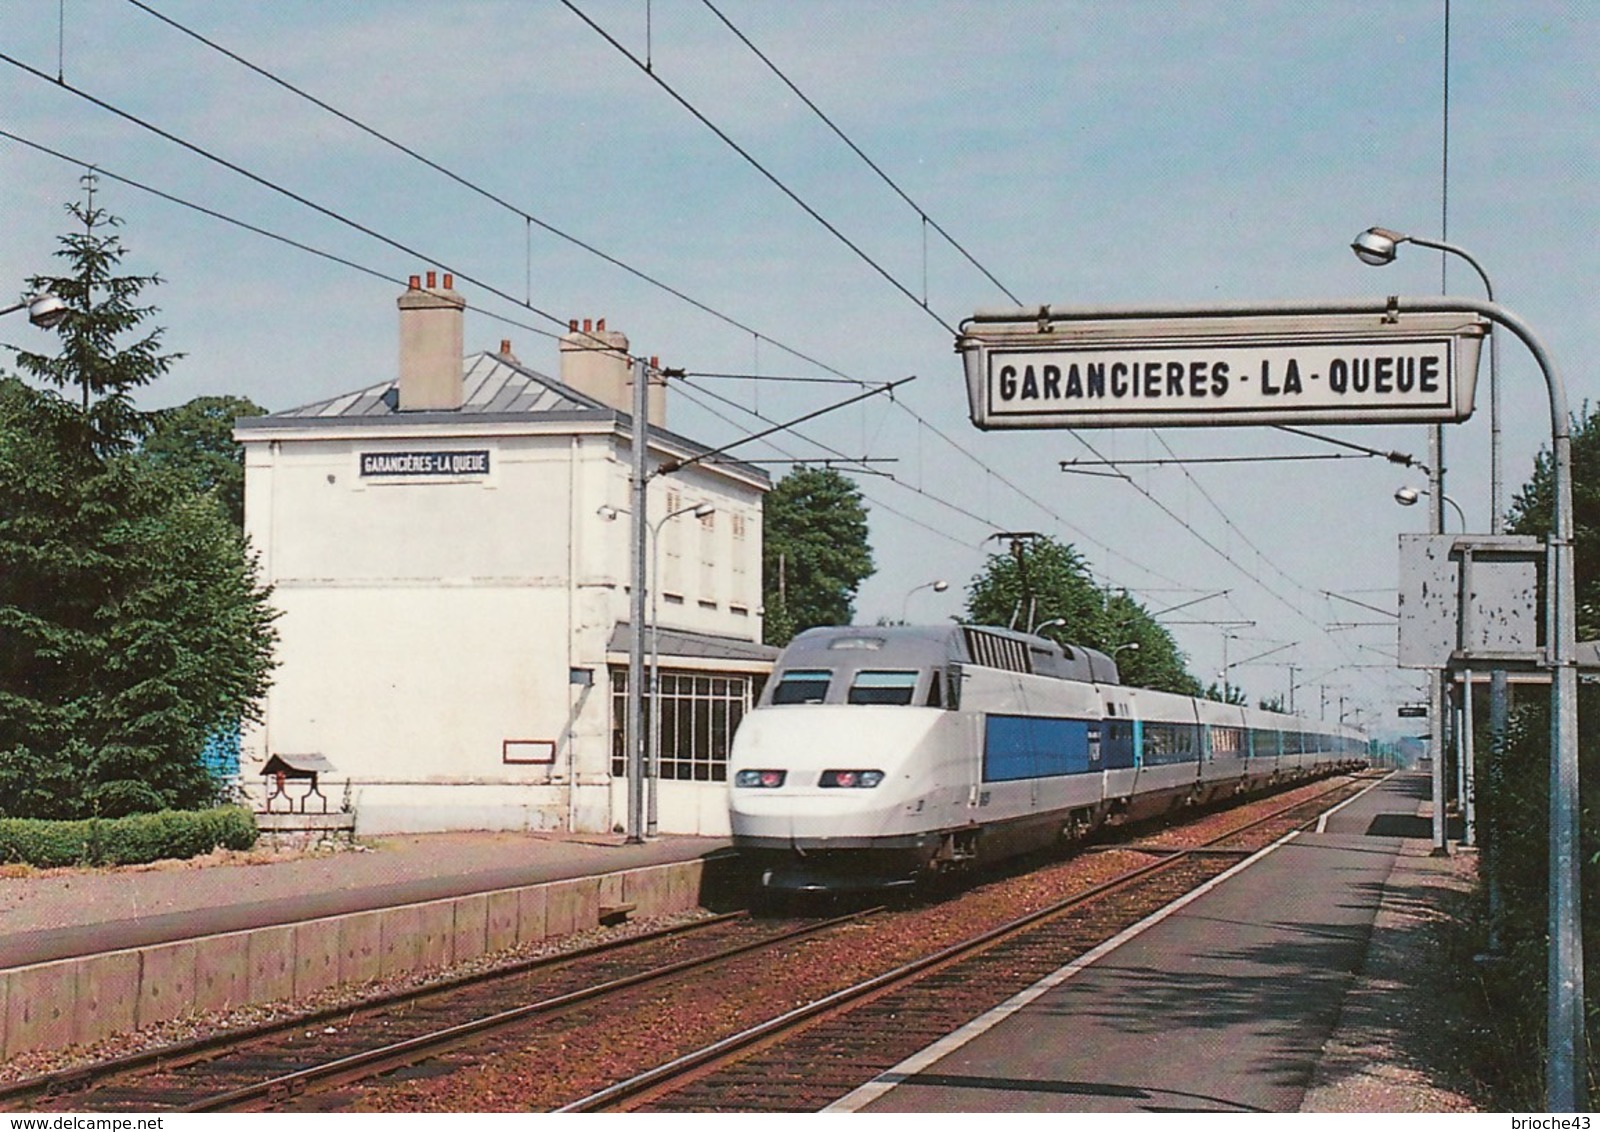 FRANCE - CPM TGV ATLANTIQUE GARE GARANCIERES-LA-QUEUE YVELINES 14.6.1989 / 2 - Treni